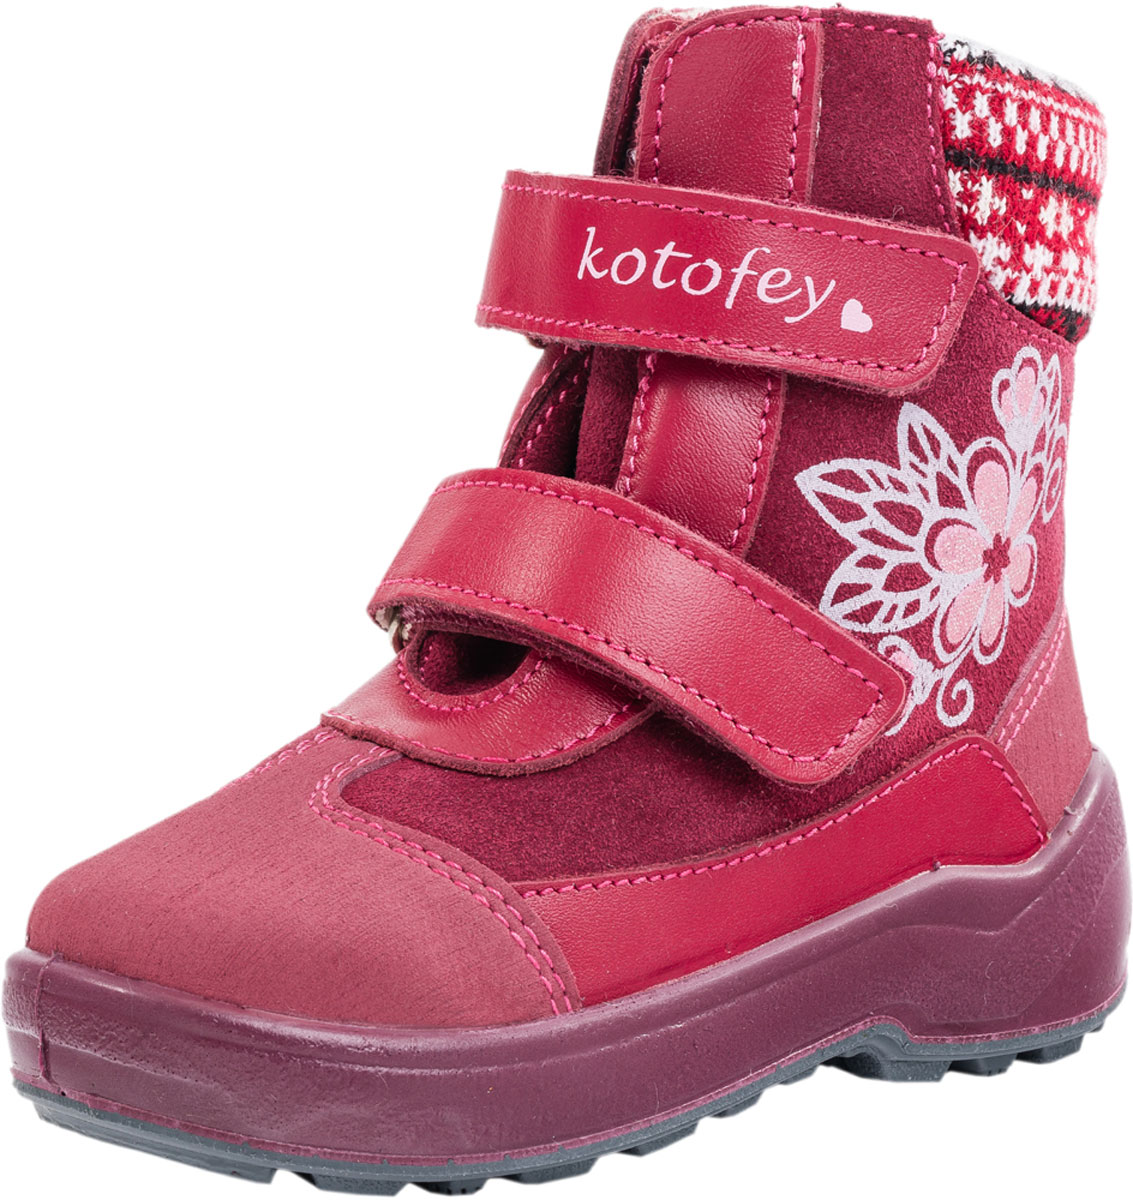 Ботинки для девочки Котофей, цвет: бордовый. 252114-41. Размер 24